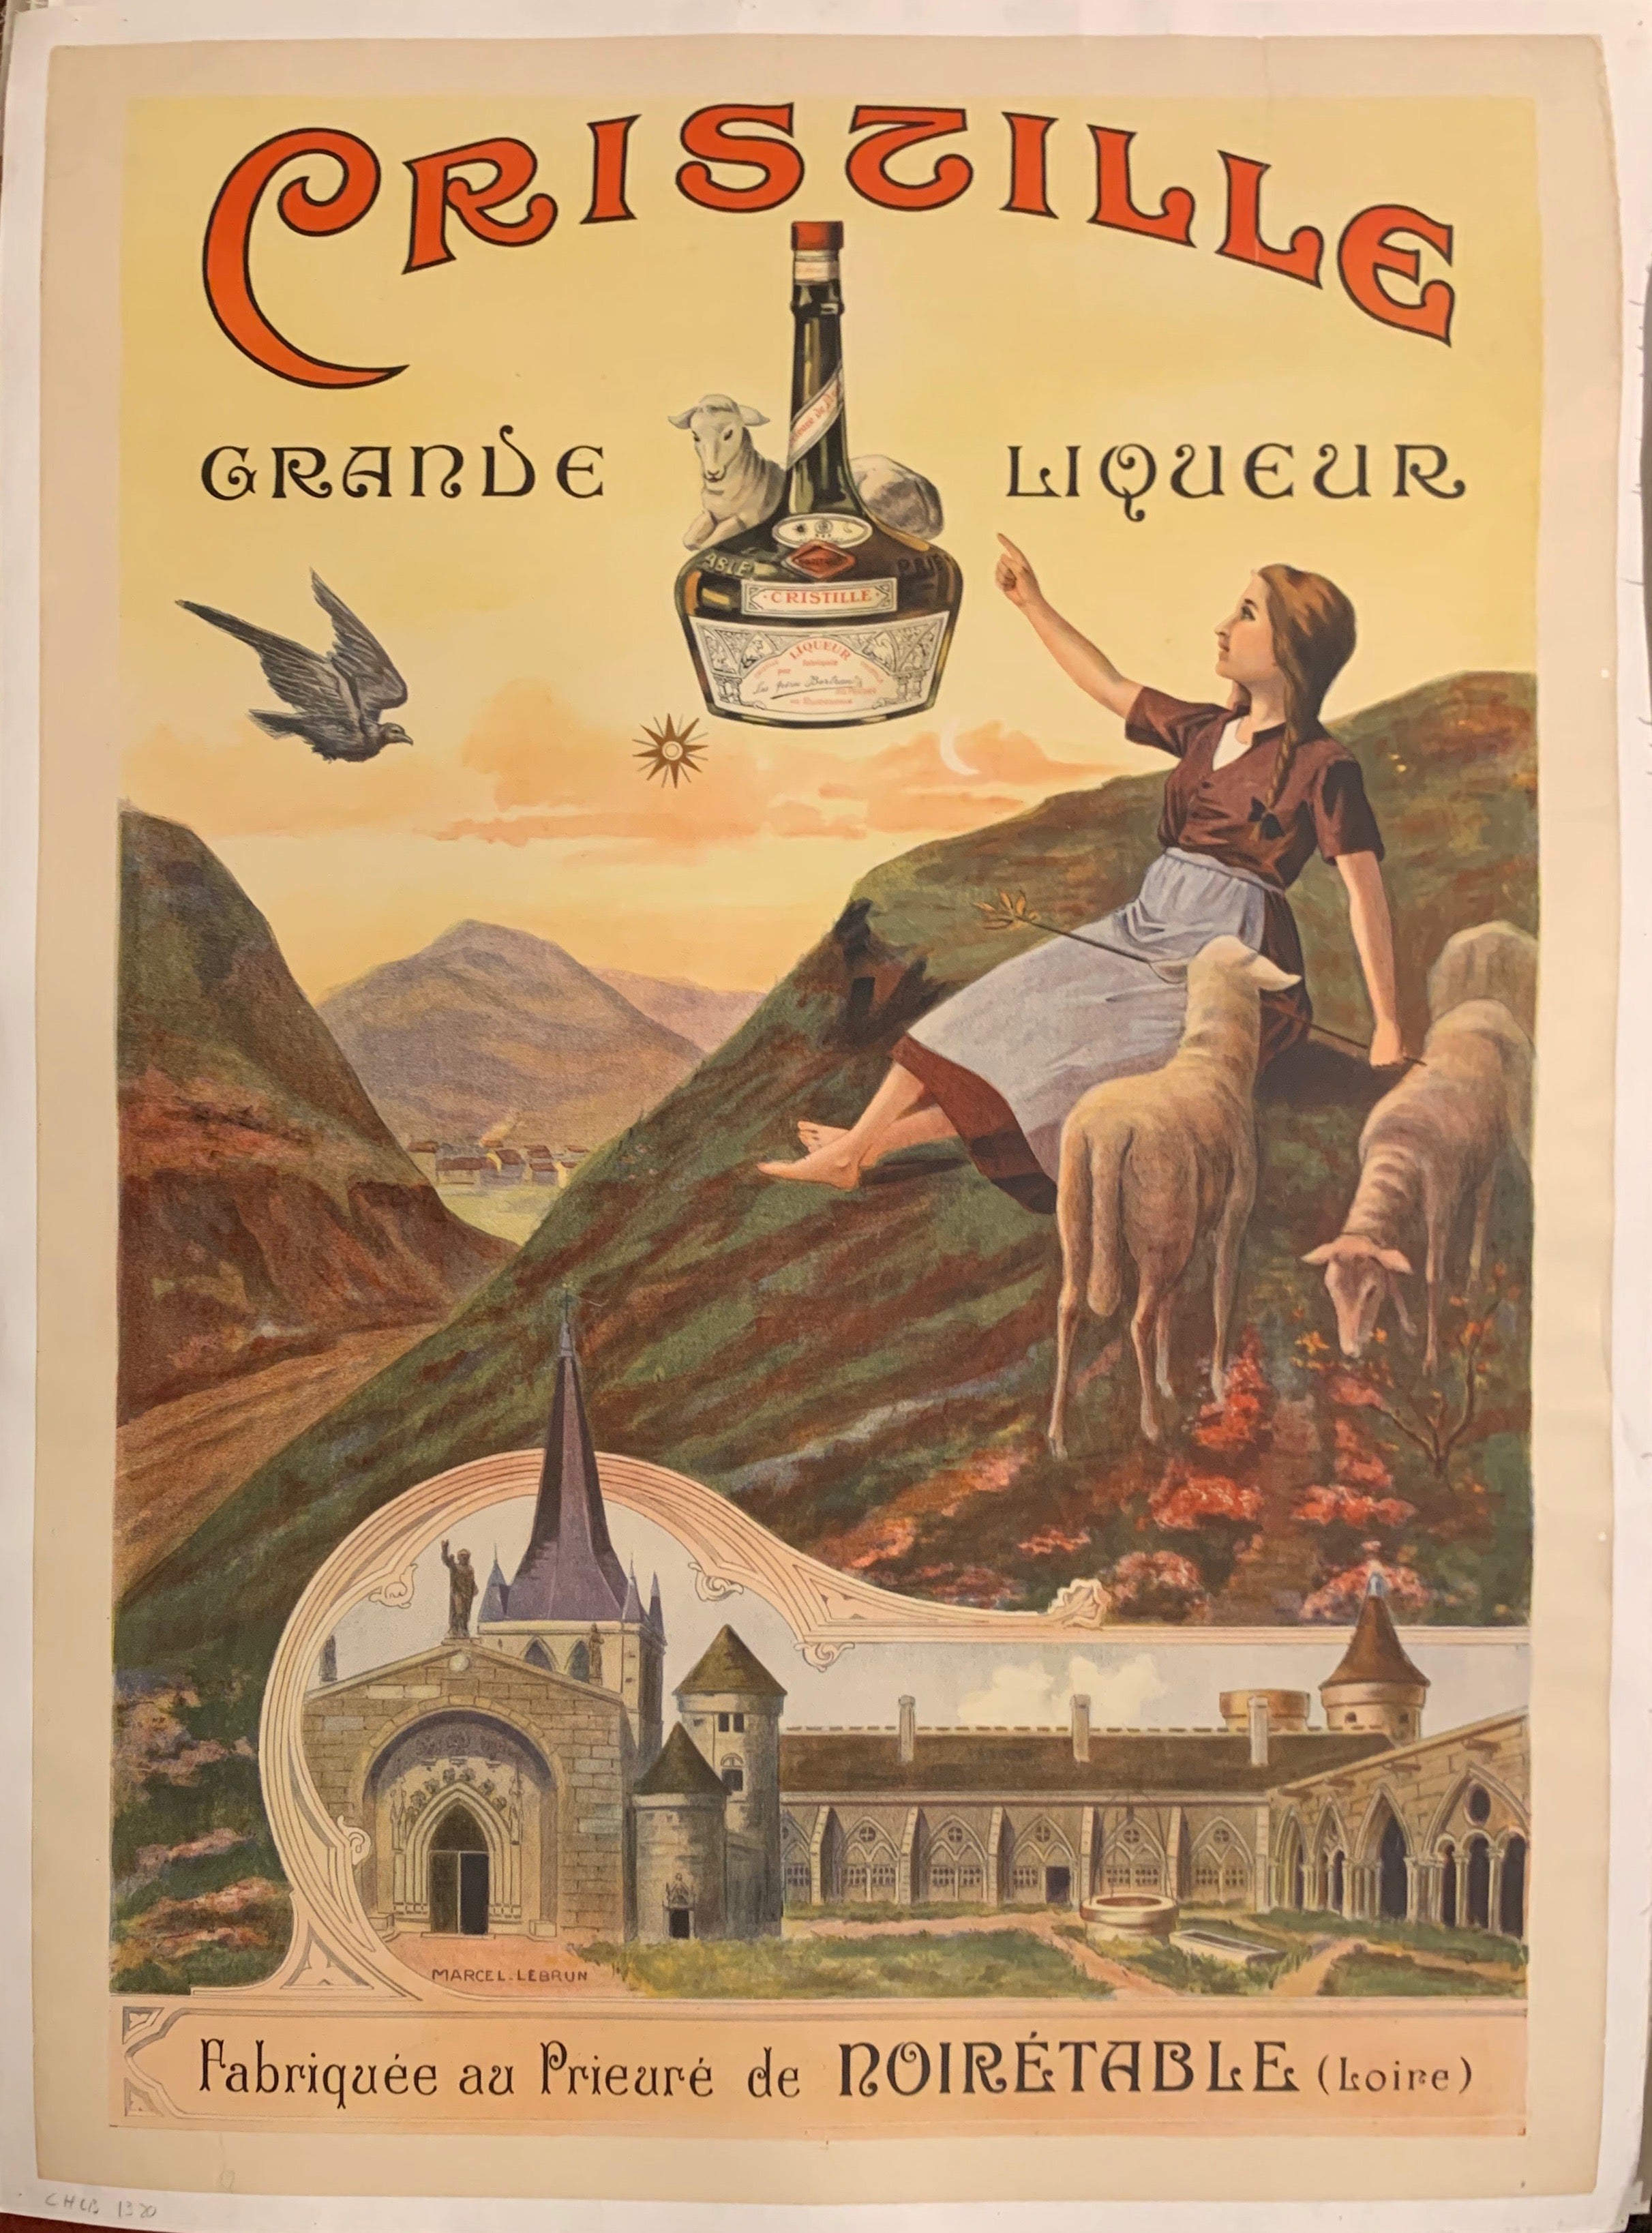 Croix de Lorraine Original Poster for Sale by Le-Graoully